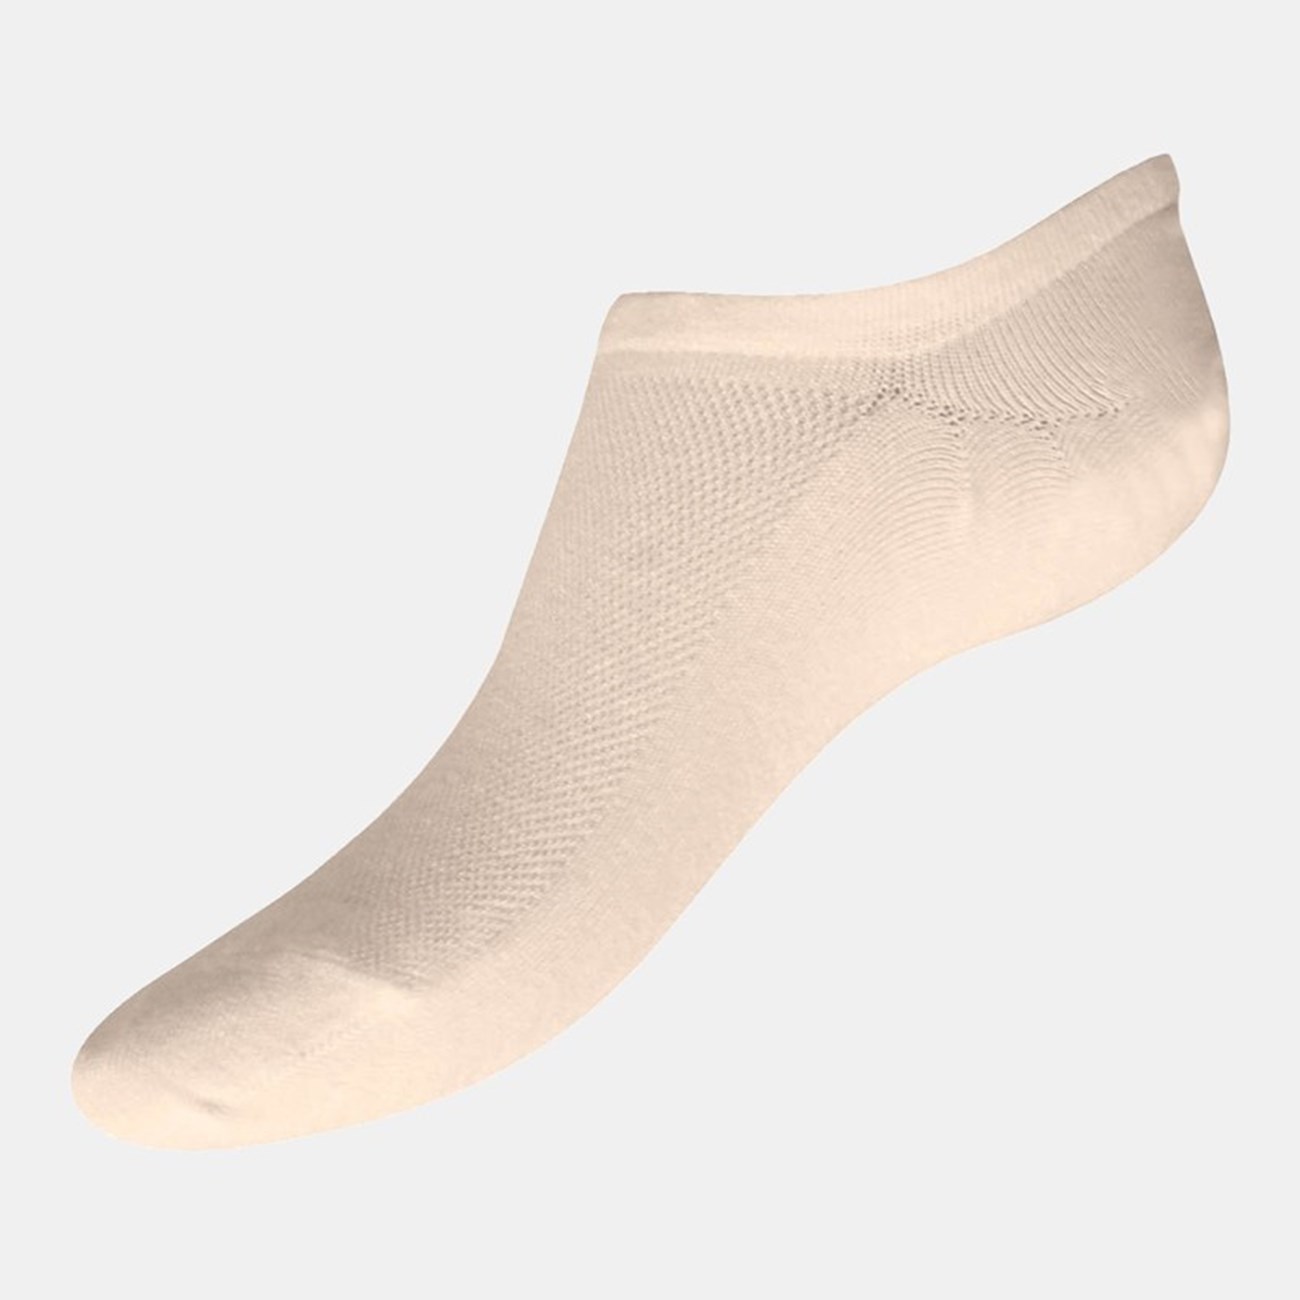  Γυναικείες Κάλτσες Sneaker Bamboo W335-19 - The Athlete's Foot